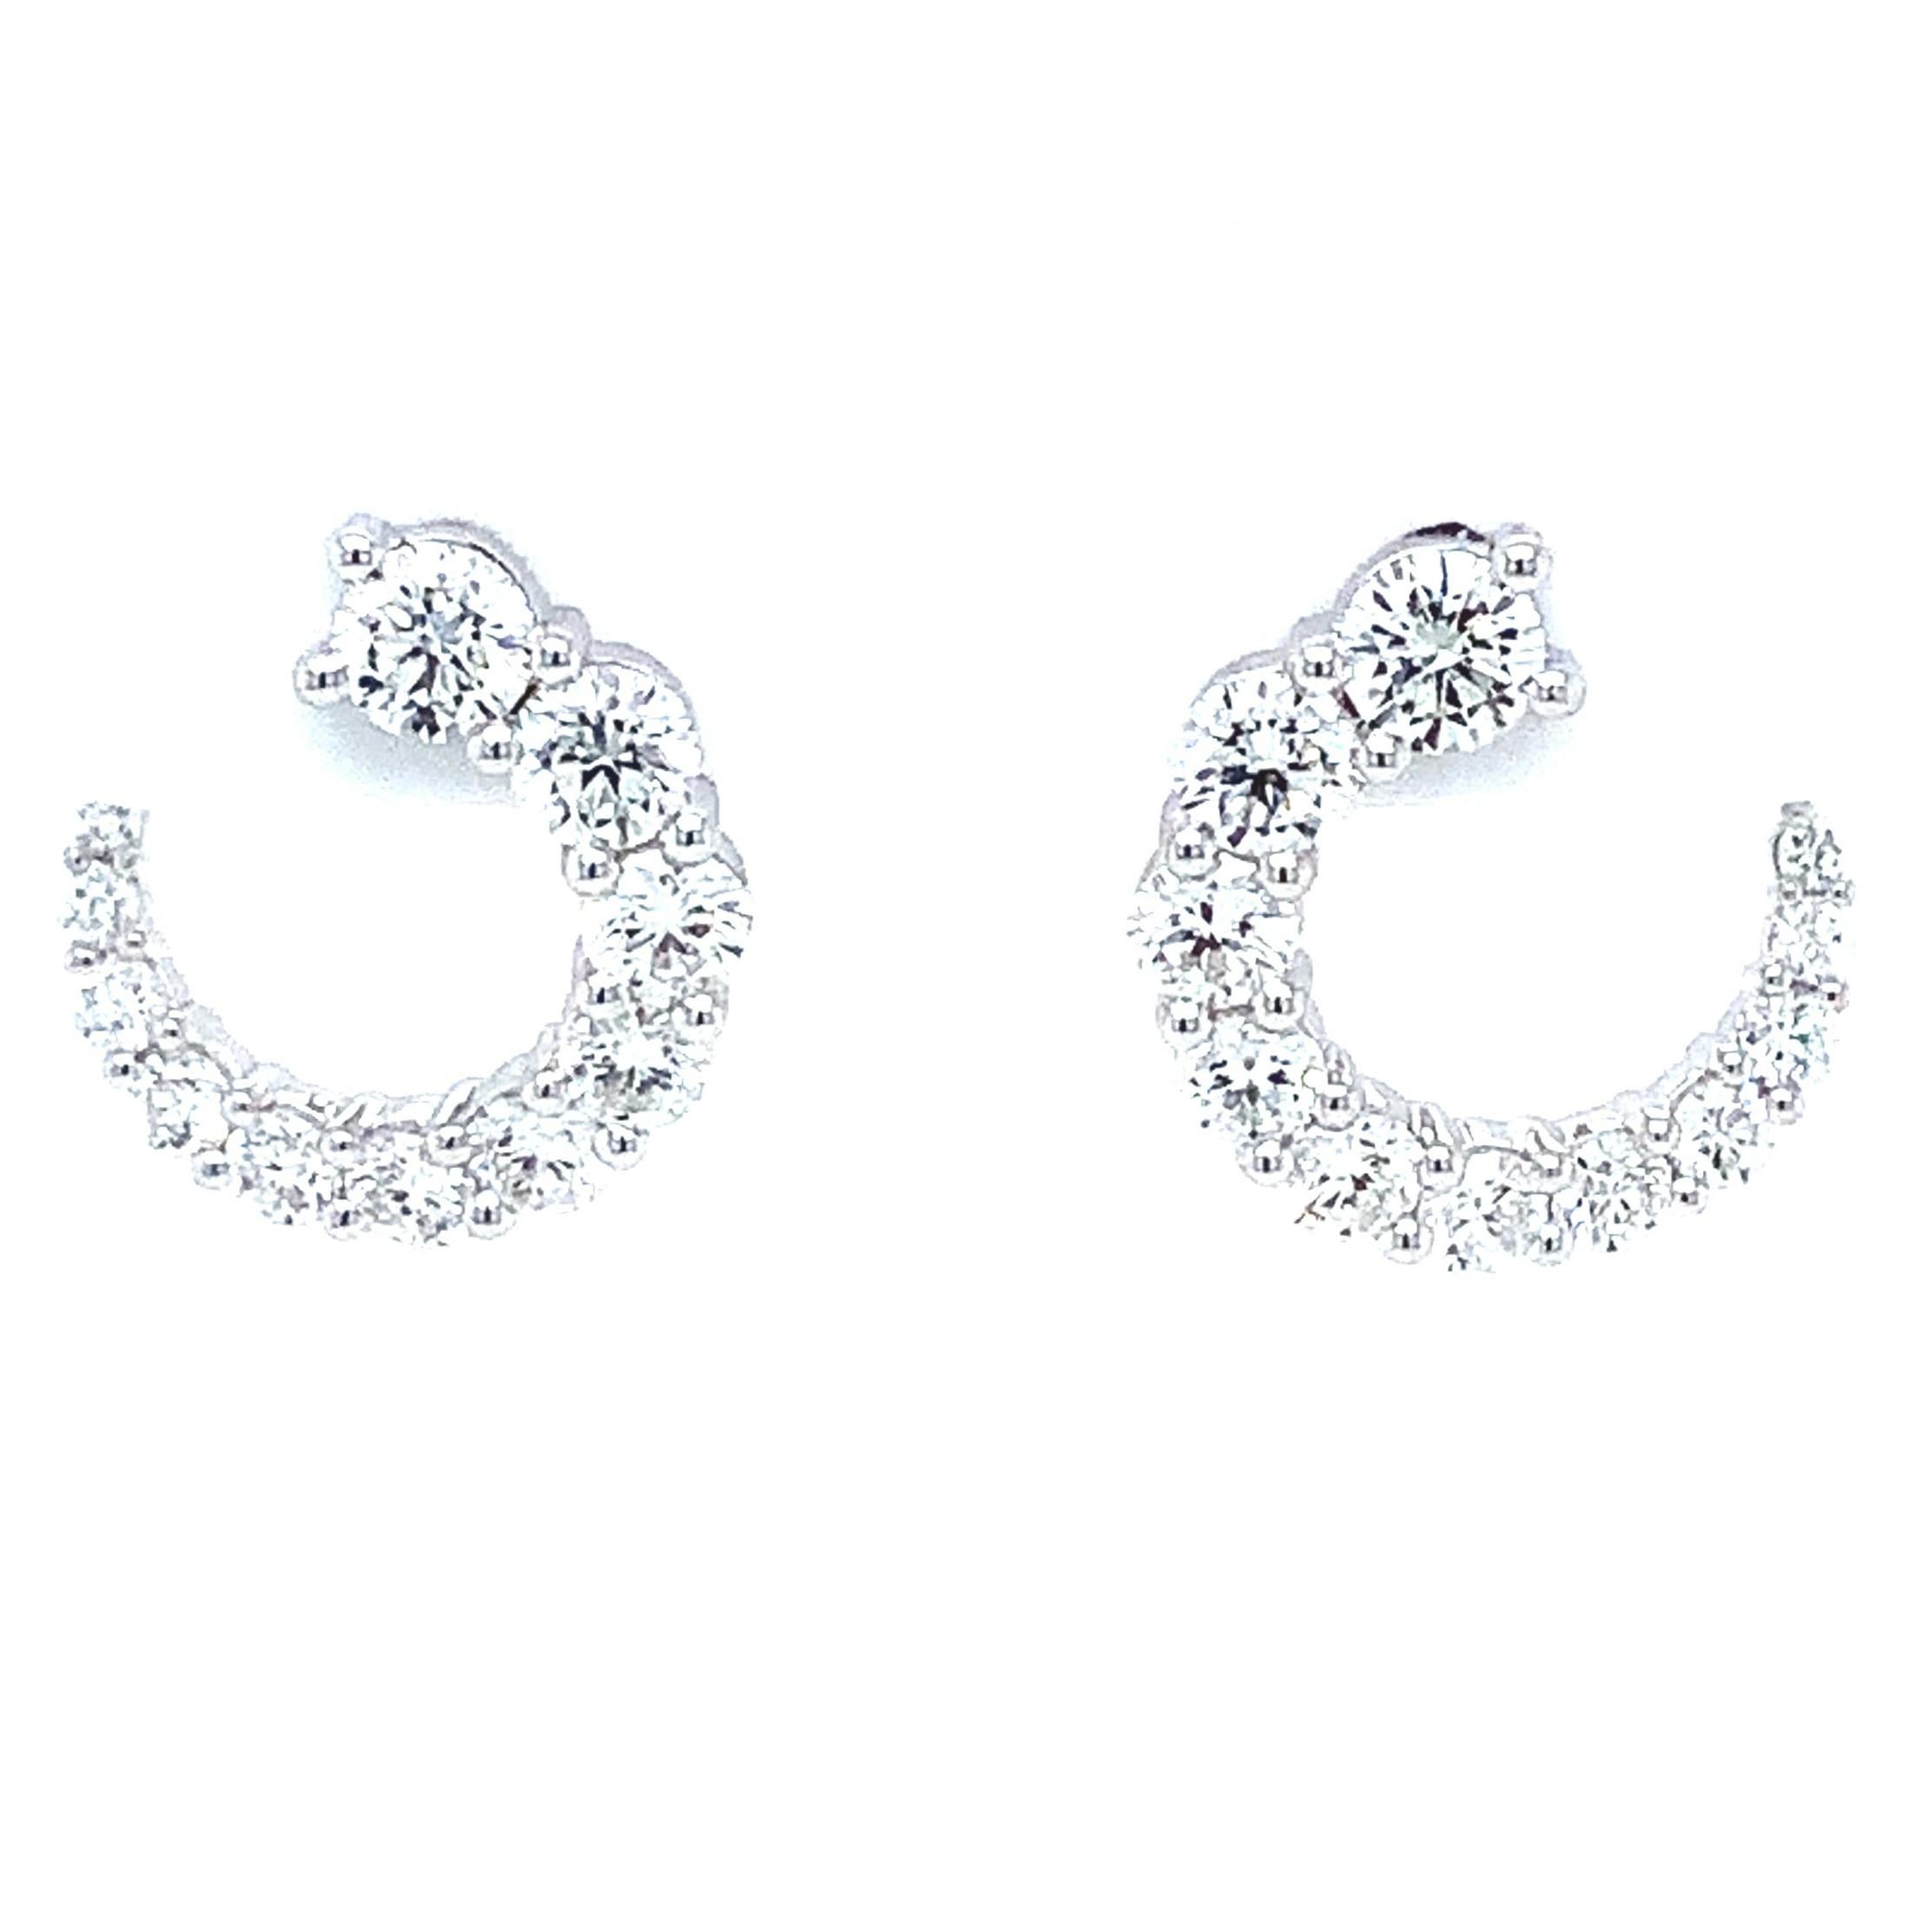 Les boucles d'oreilles en or blanc 18 carats Memoire Luna Wrap Collection Diamond comportent 22 diamants ronds de taille brillant d'un poids total en carats de 1,30 ct, de couleur F-G, de pureté VS1, de taille et de polissage idéaux, d'un diamètre